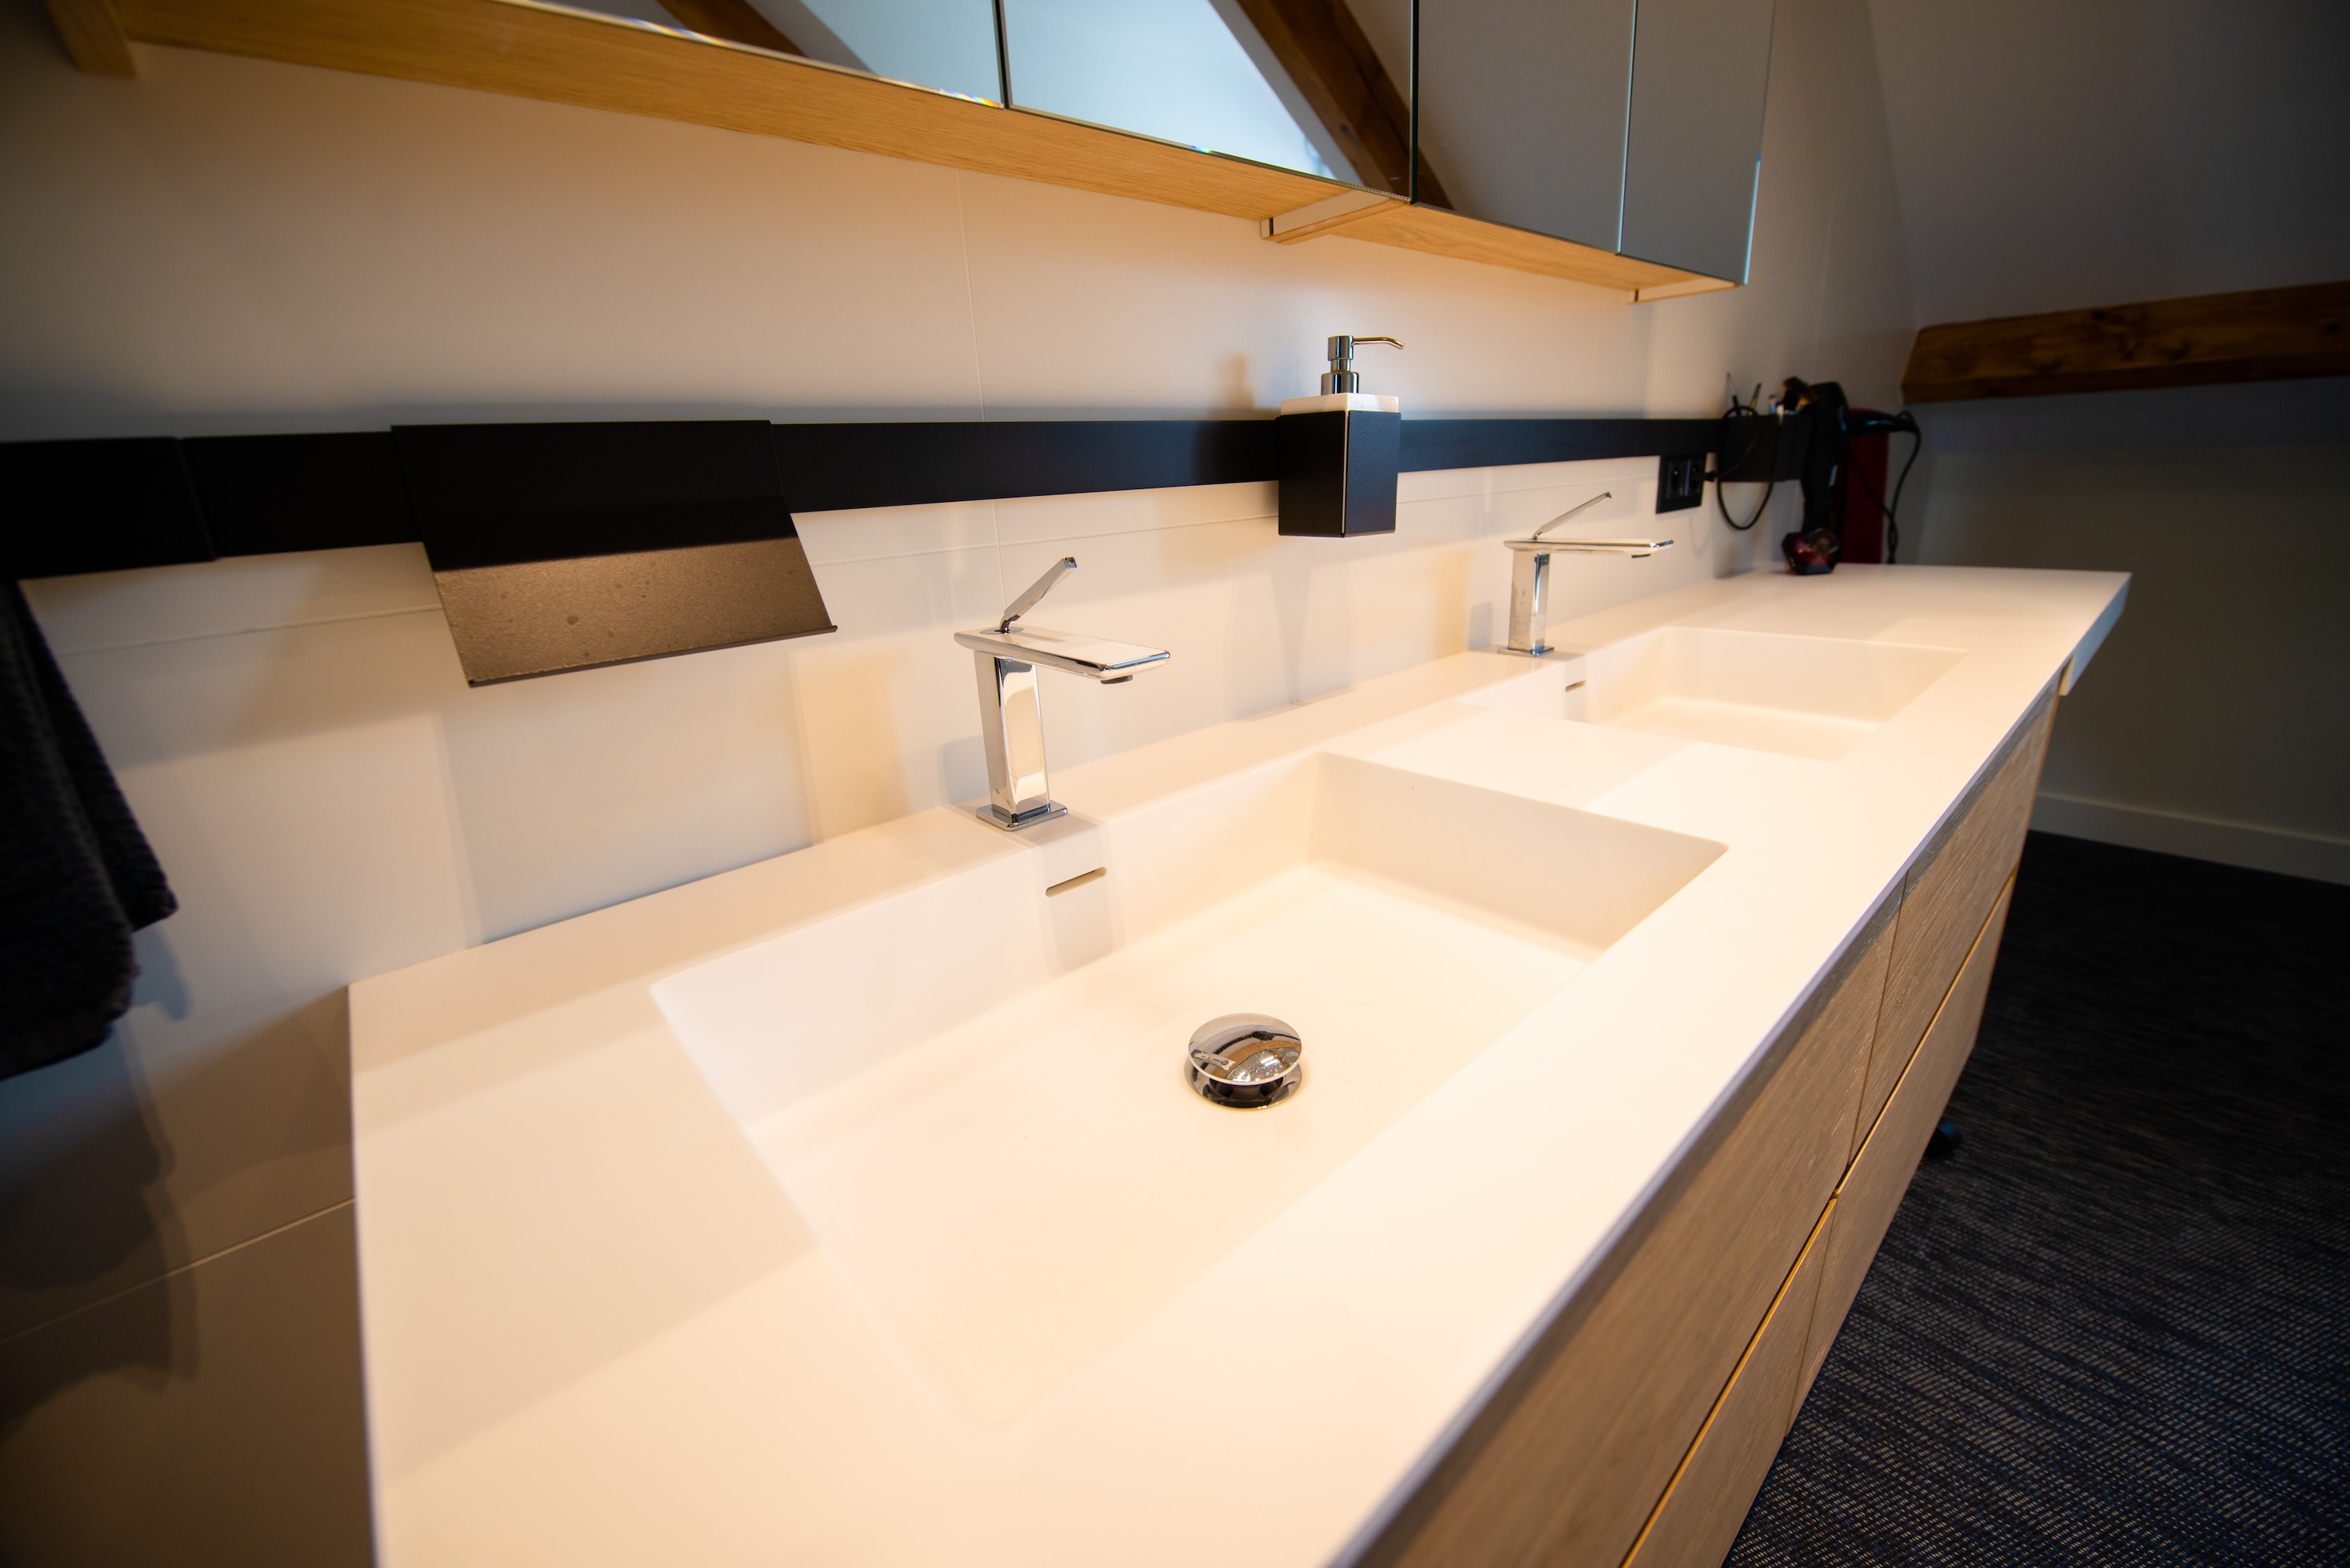 Salle de bains design avec robinet encaste peggy guezello